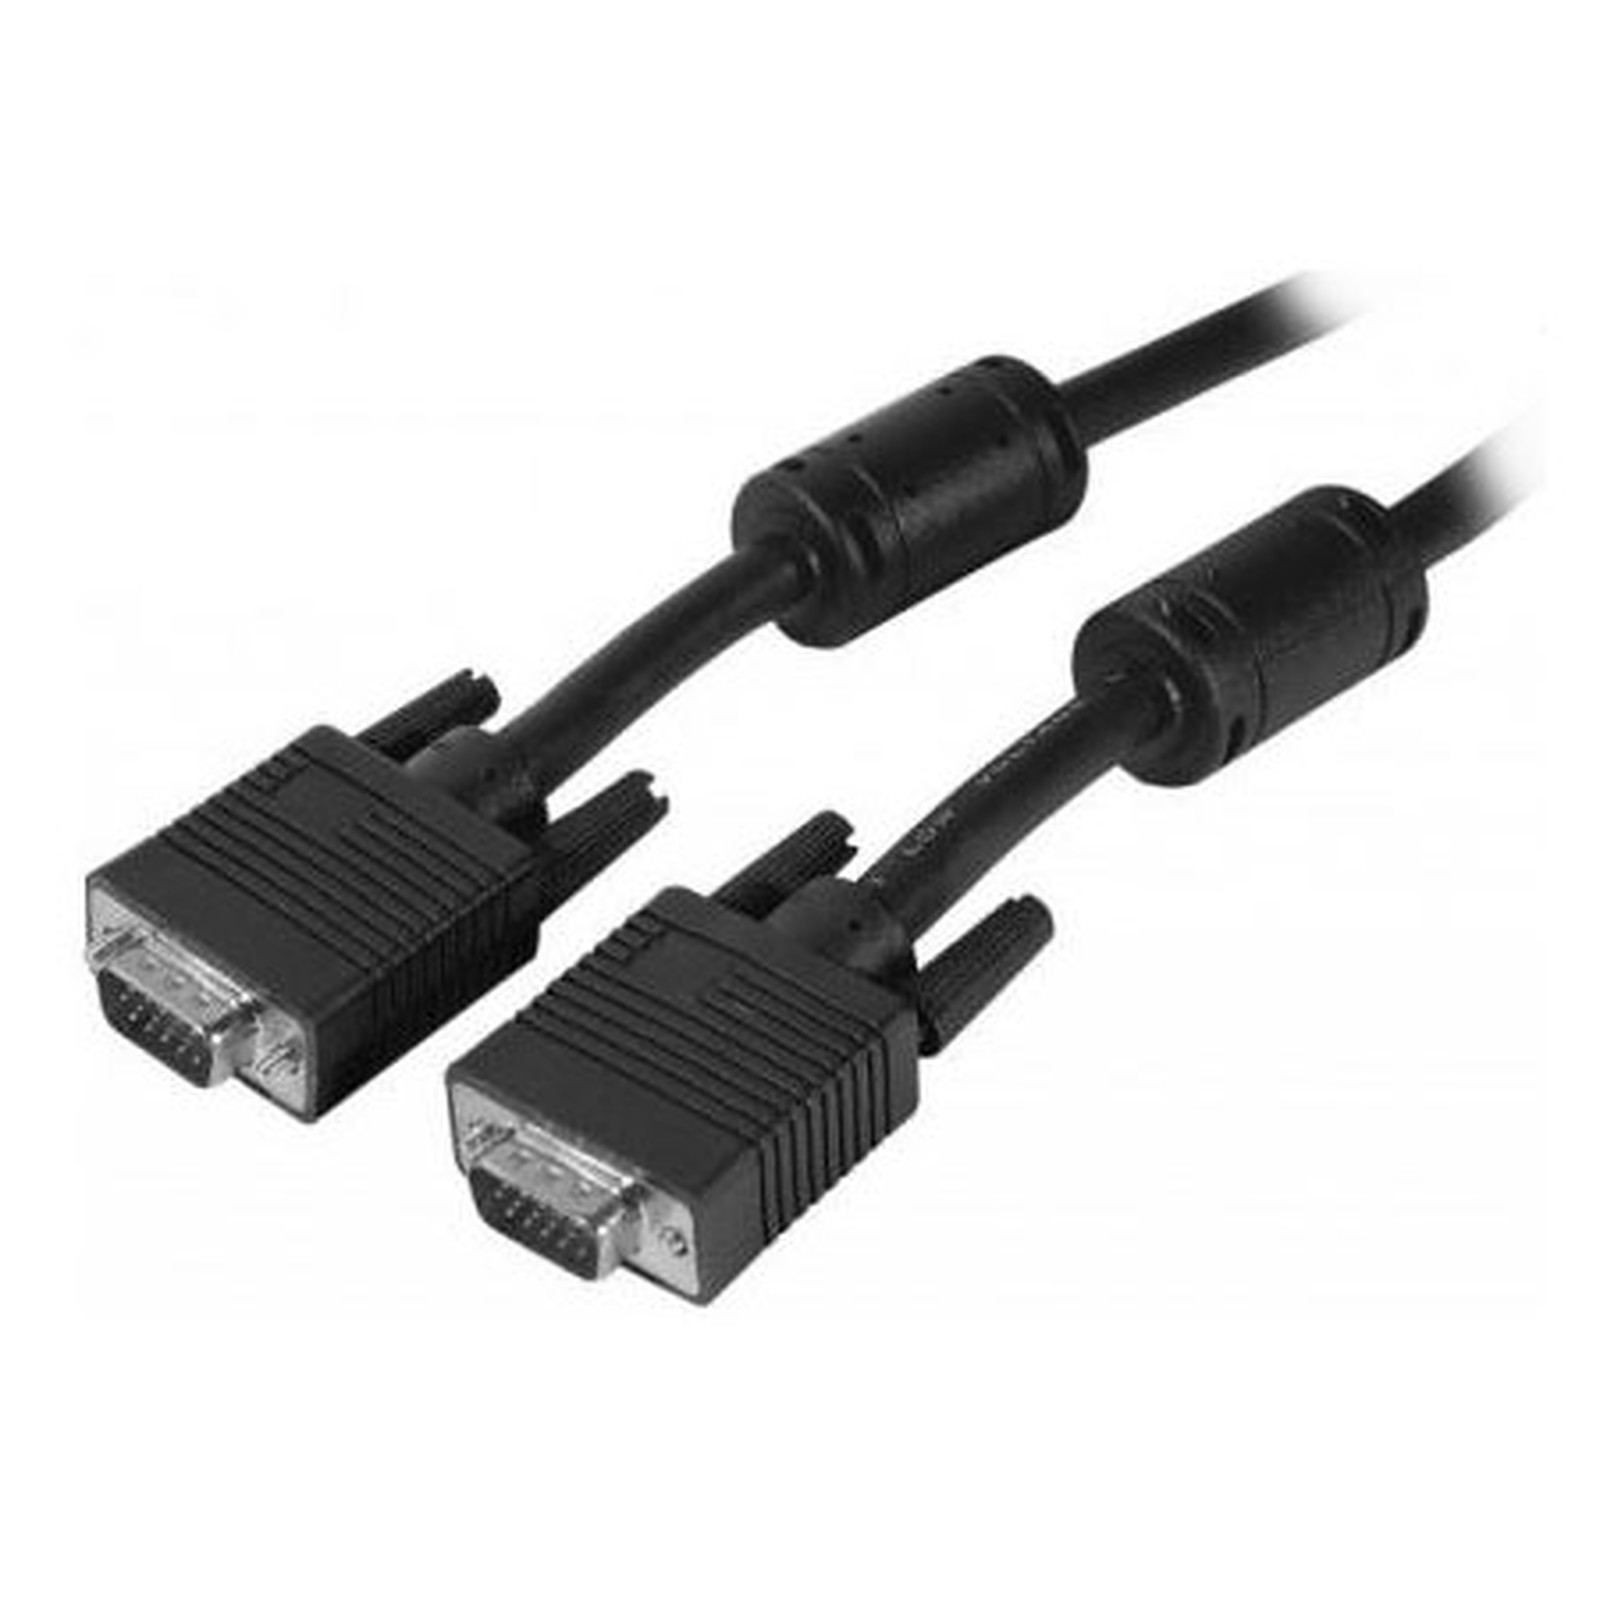 Cable VGA HD male / male (15 mètres) - VGA Generique